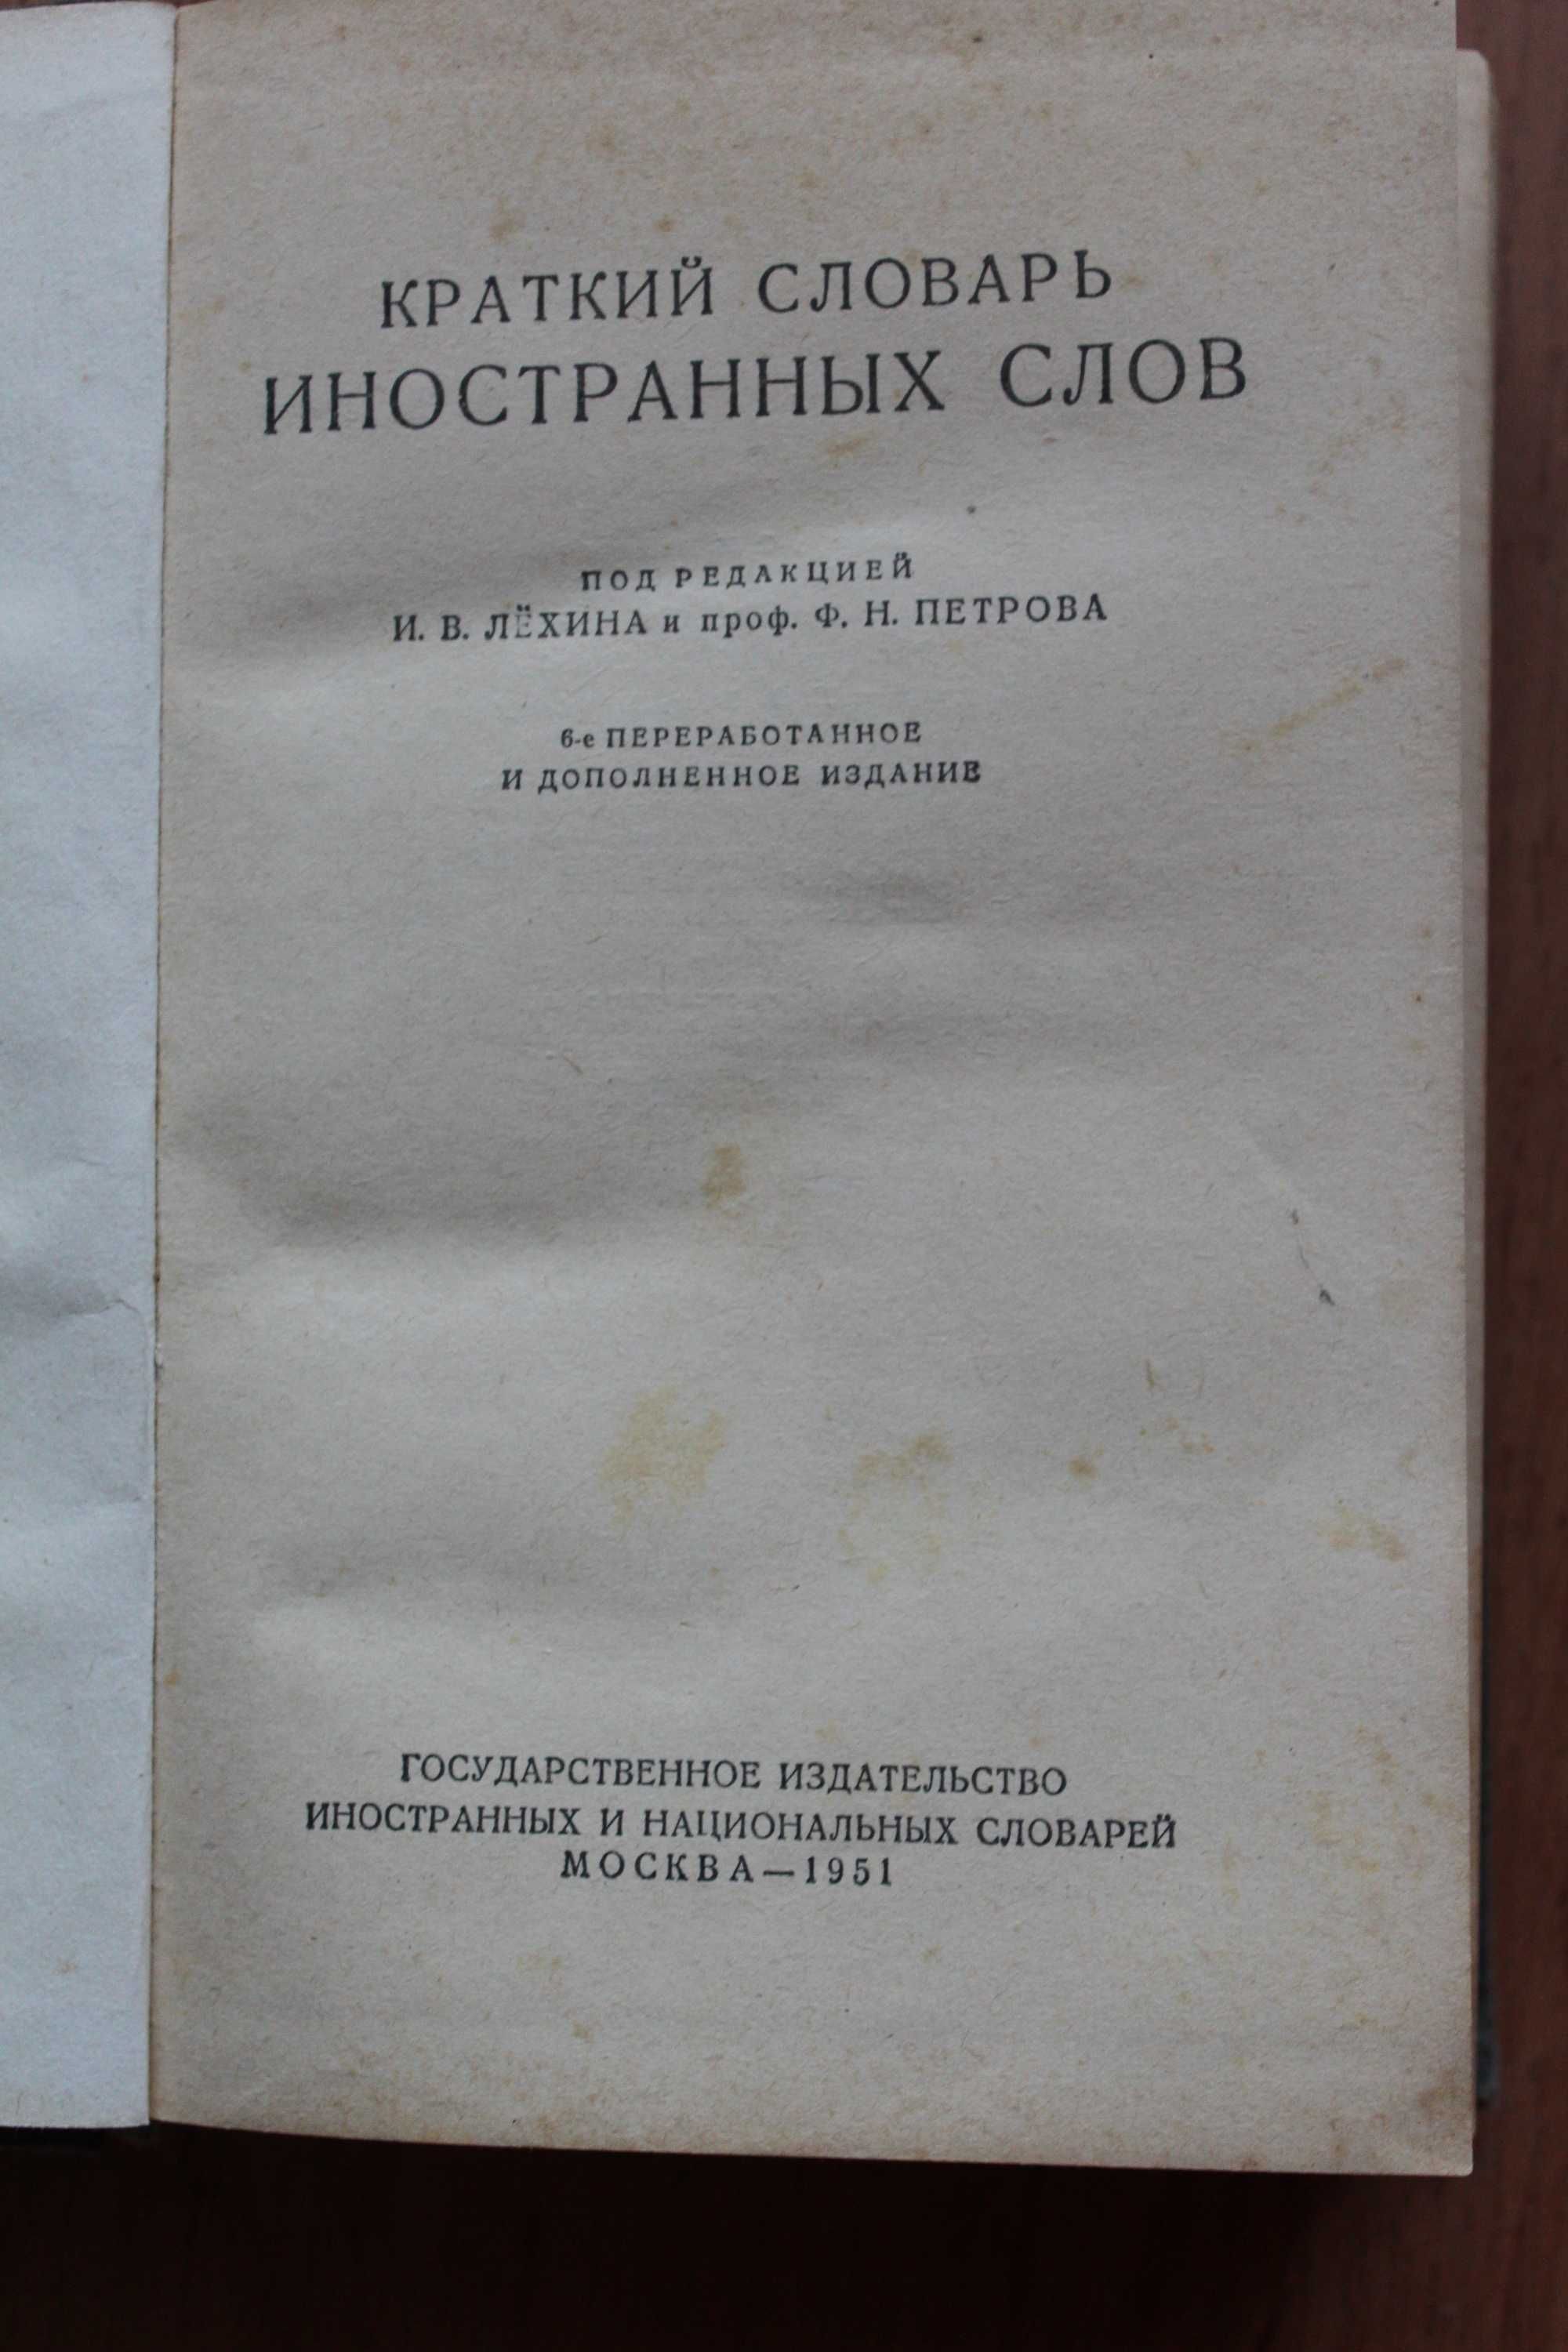 Энциклопедический словарь Ф.Павленкова  1910г